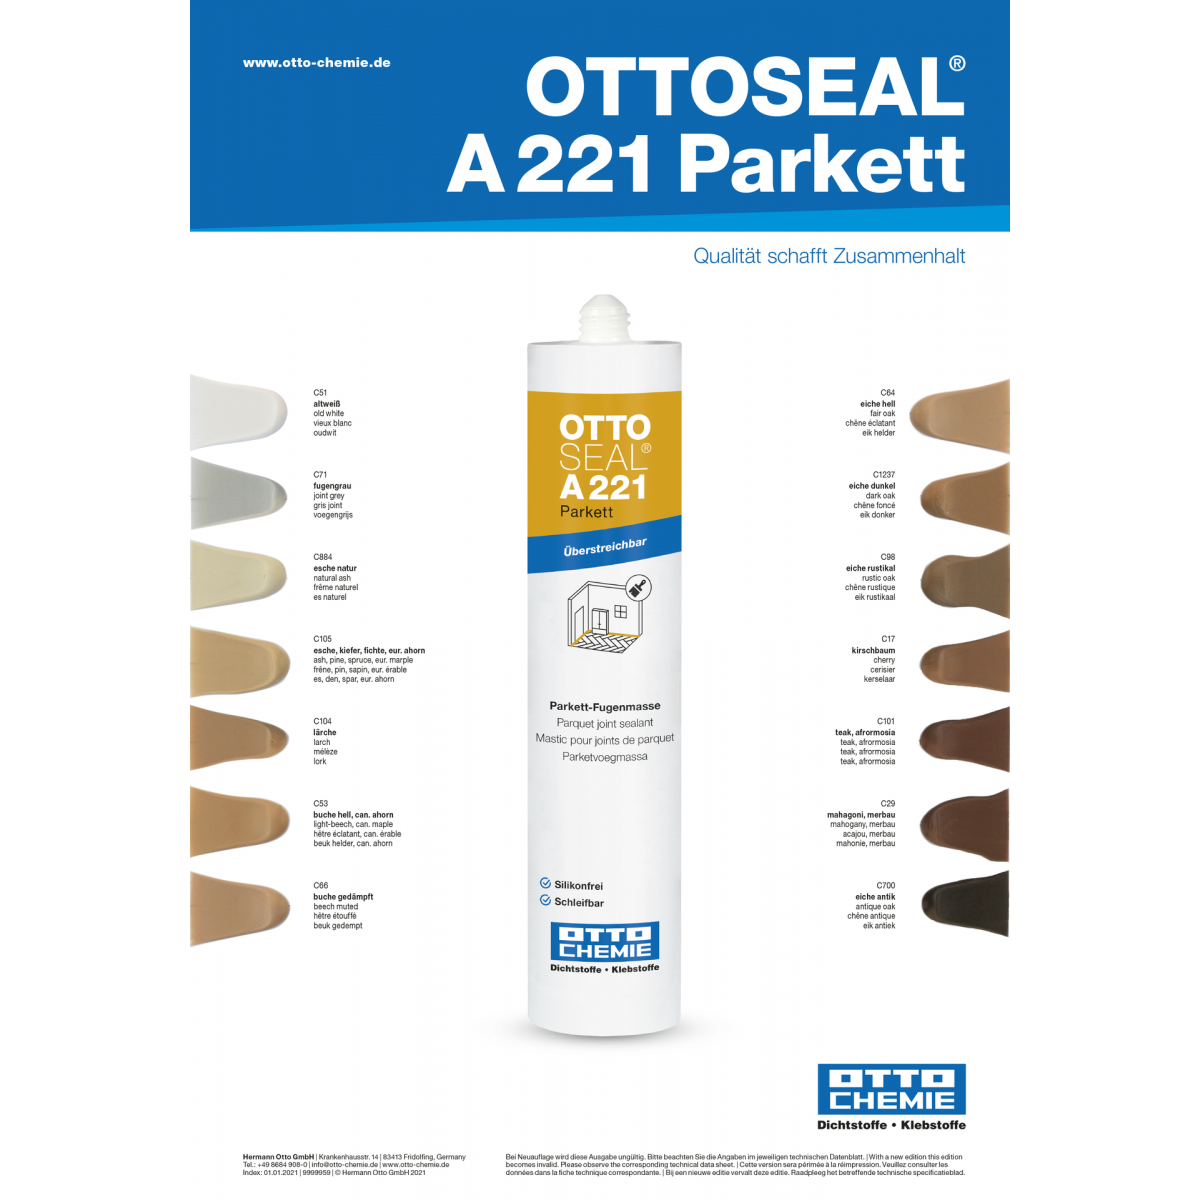 ottoseal-a221-parkett-kleurenkaart-kitcentrum.be